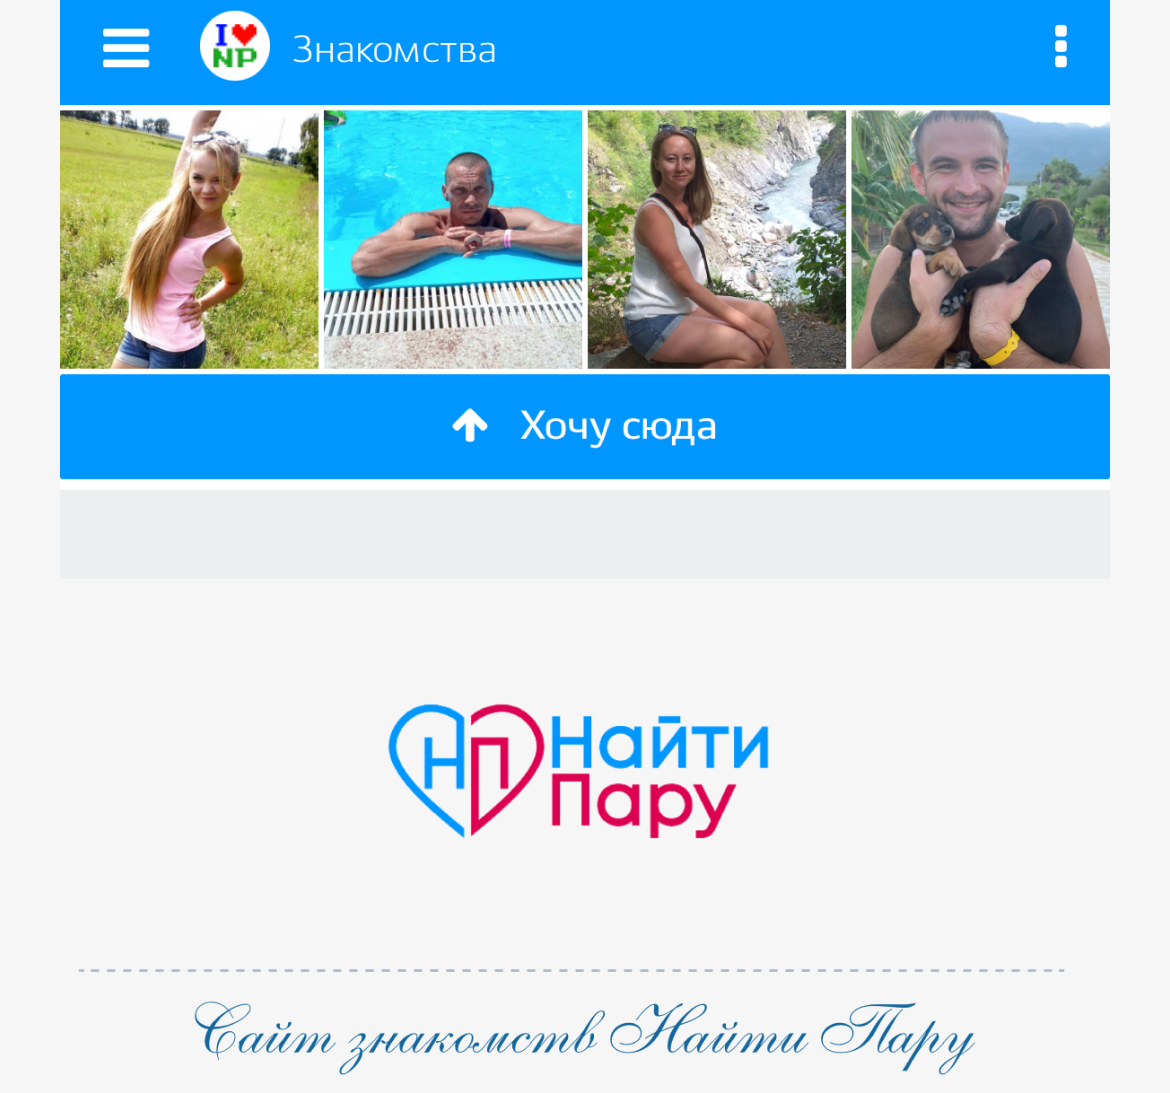 Знакомства в ВКонтакте: Лучшие группы, сообщества и паблики знакомств ВК